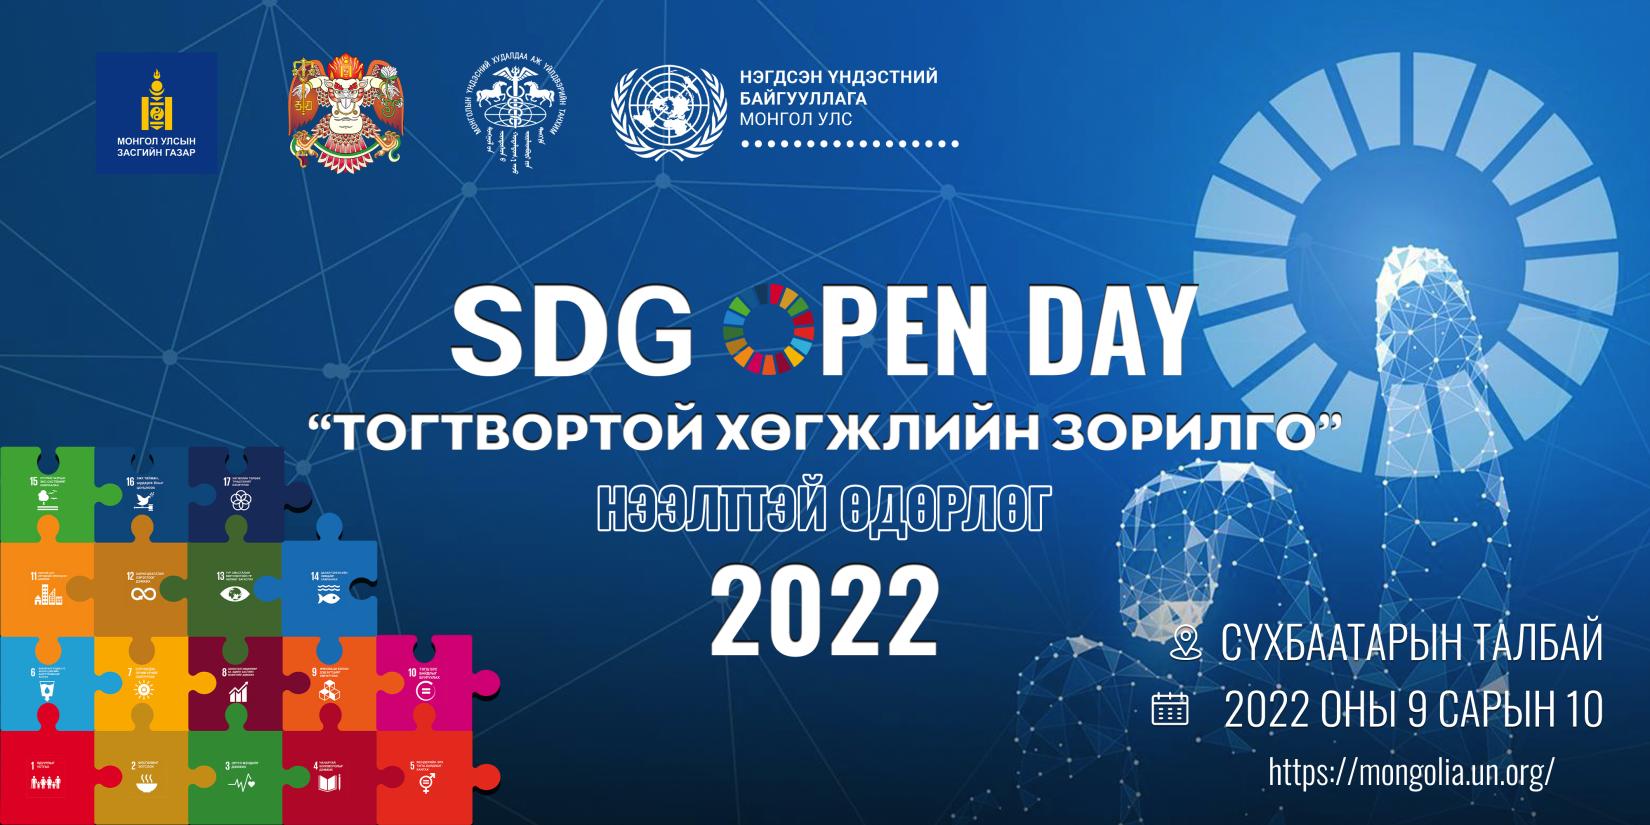 SDG Open Day banner